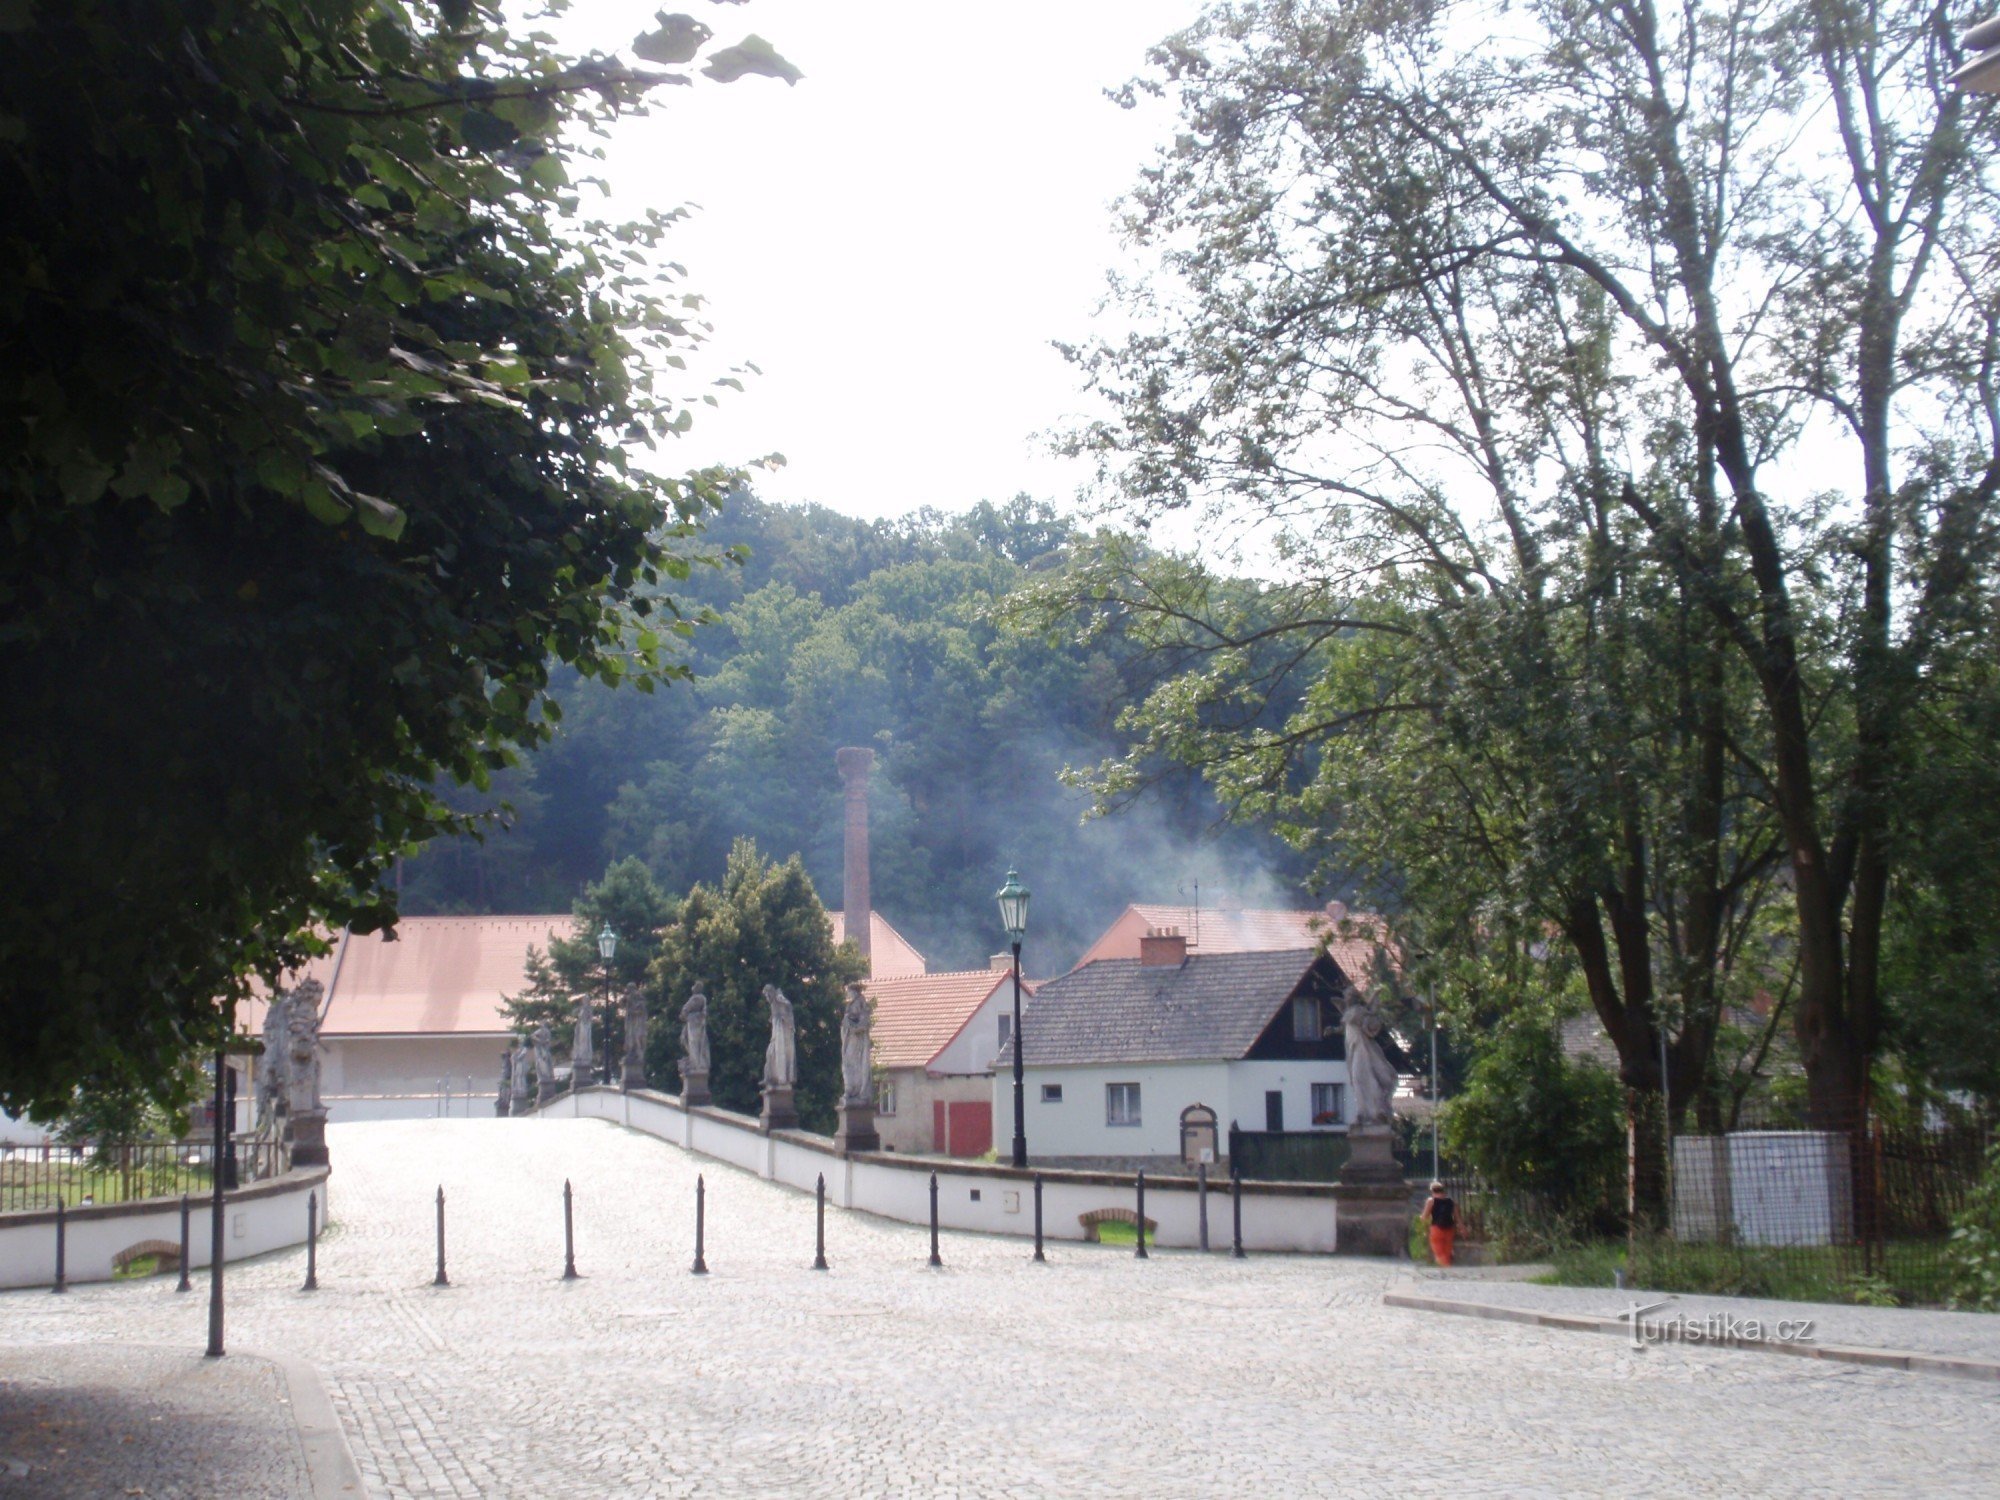 Un piccolo circuito intorno a Náměšti nad Oslavou